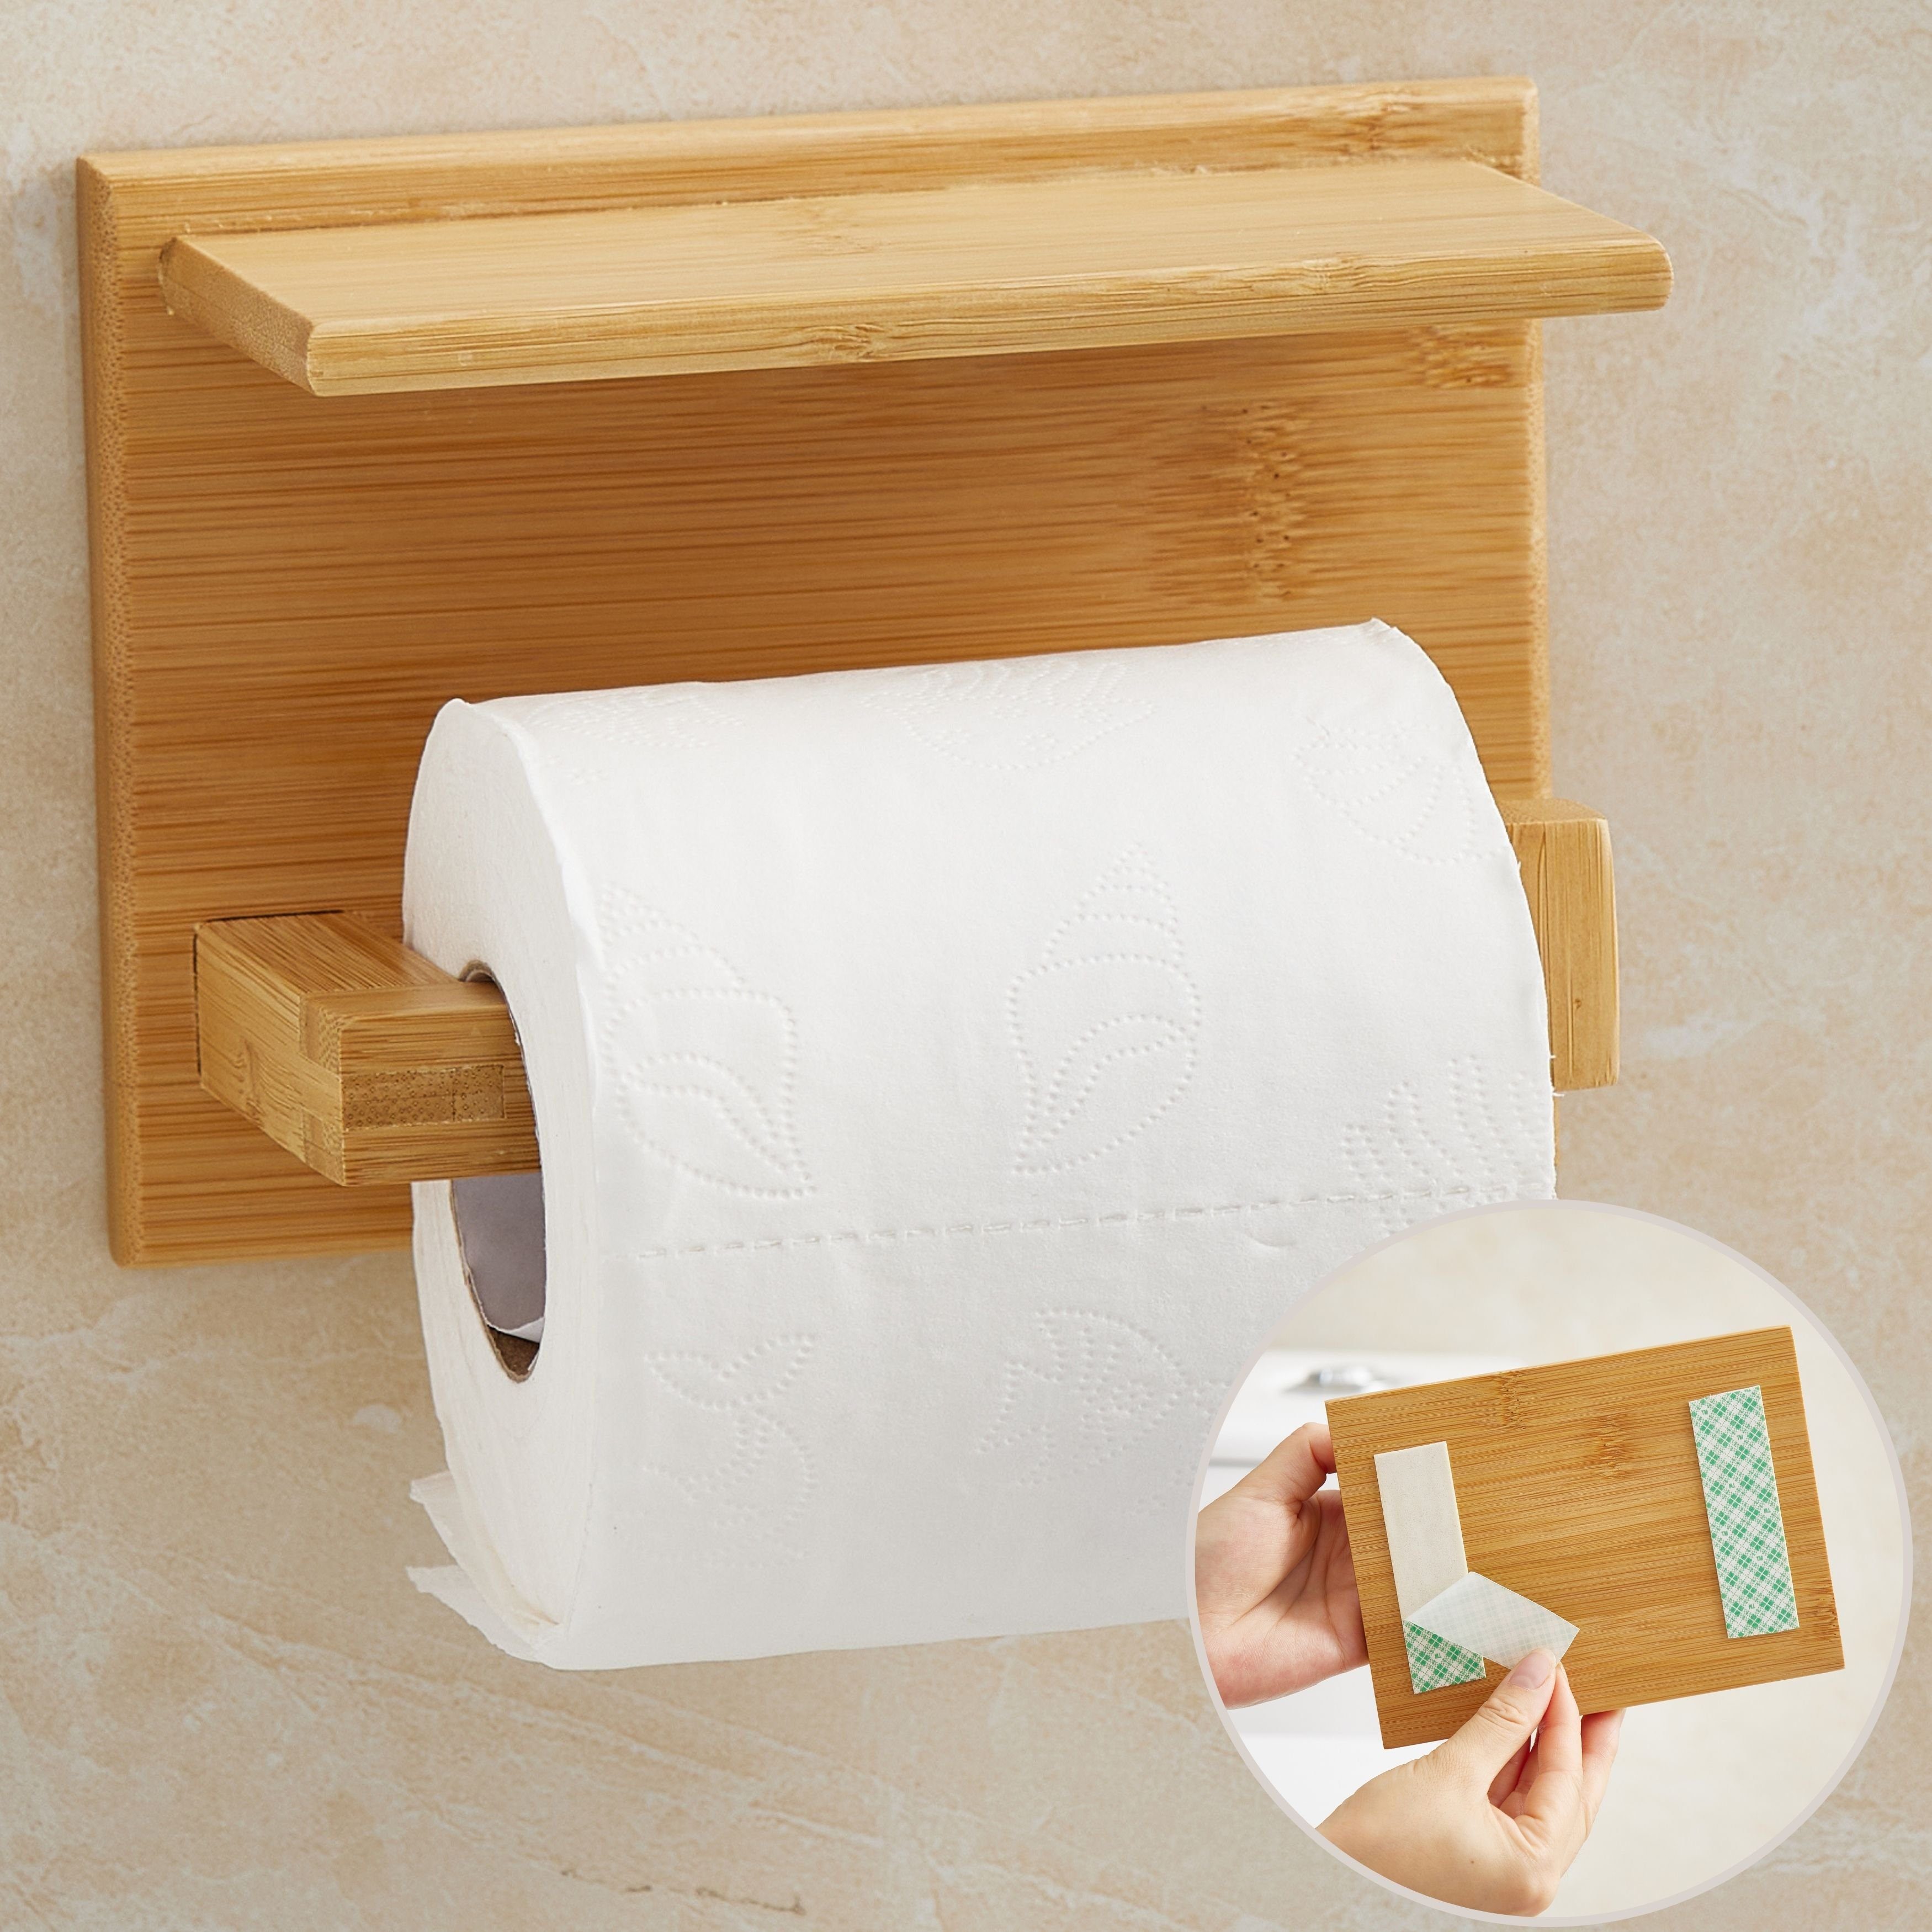 DEKAZIA Toilettenpapierhalter, ohne Bohren, Rollenhalter Holz, WC Klopapierhalter Ablage, mit